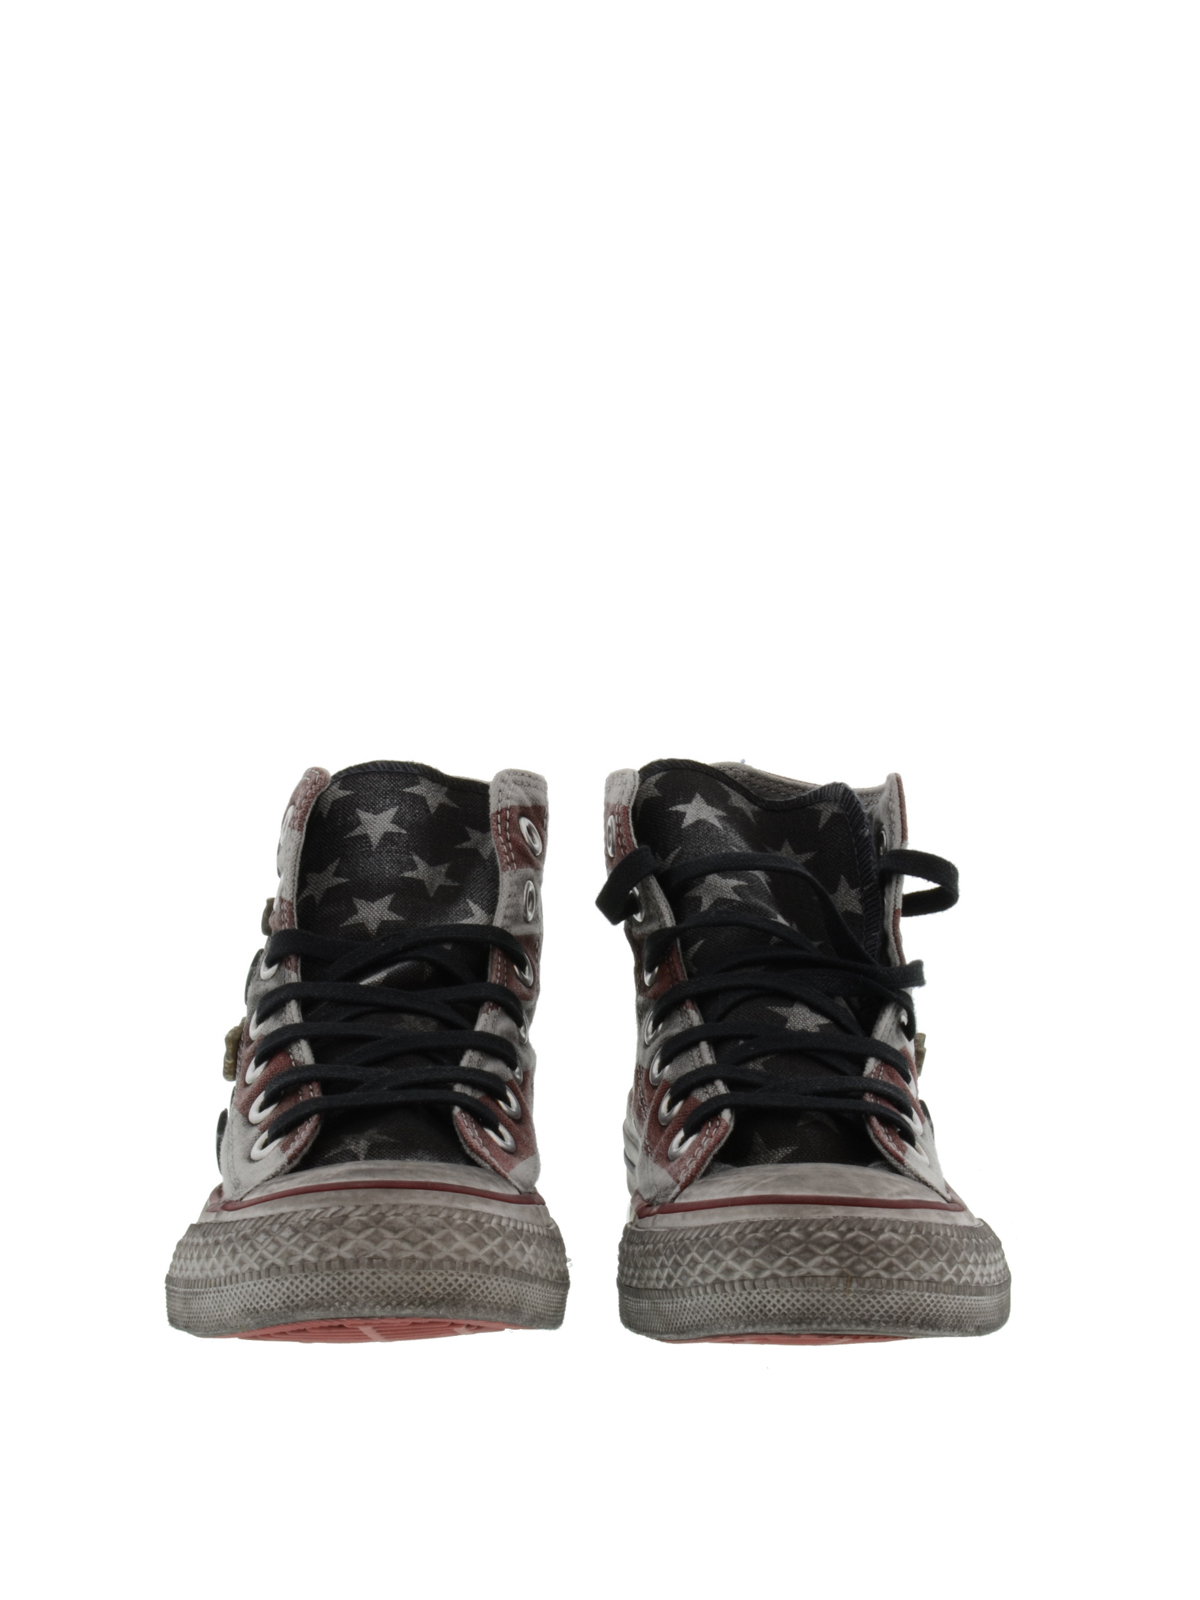 Embotellamiento Gran cantidad de Armada Zapatillas Converse Limited Edition - Studded America sneakers -  1C15FA01BLUROSSO